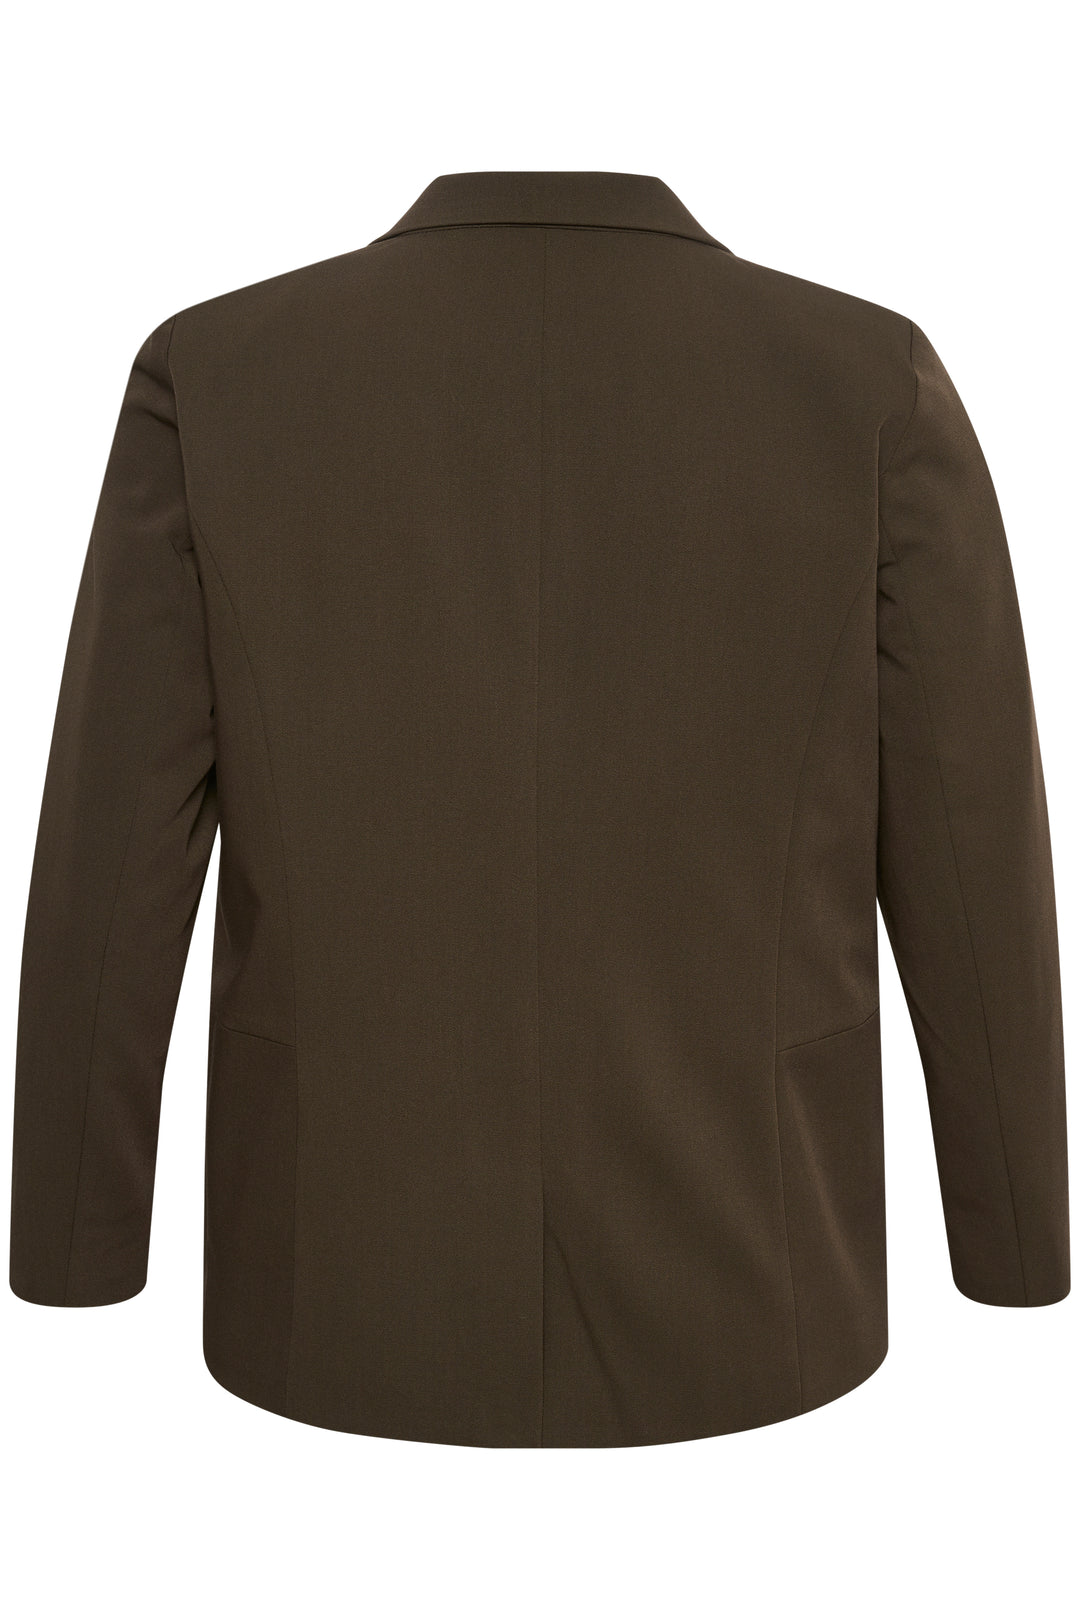 bruine blazer - kaffe curve - - grote maten - dameskleding - kledingwinkel - herent - leuven